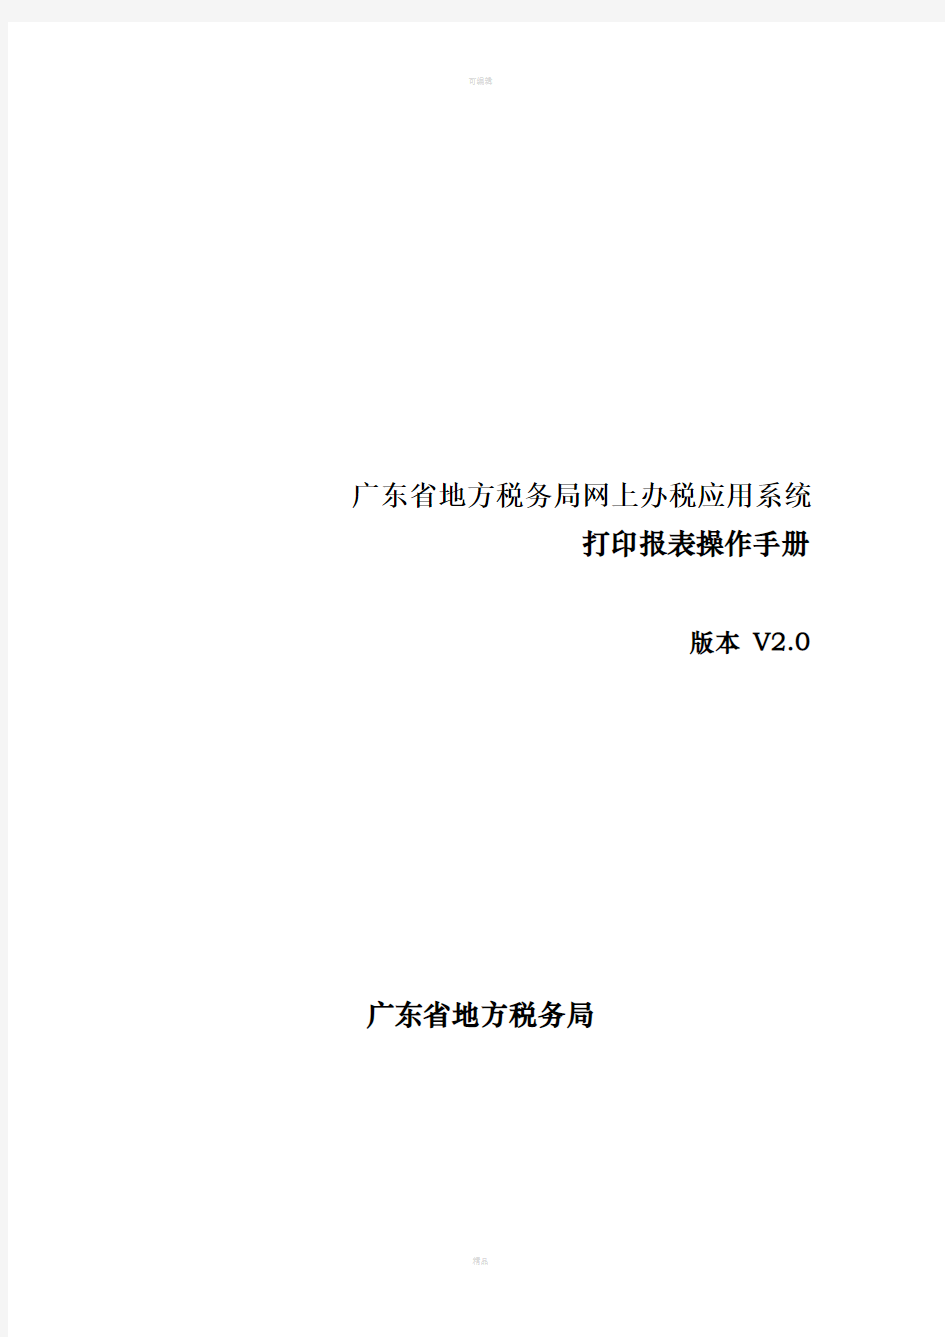 广东省地方税务局网上办税应用系统操作手册——打印报表